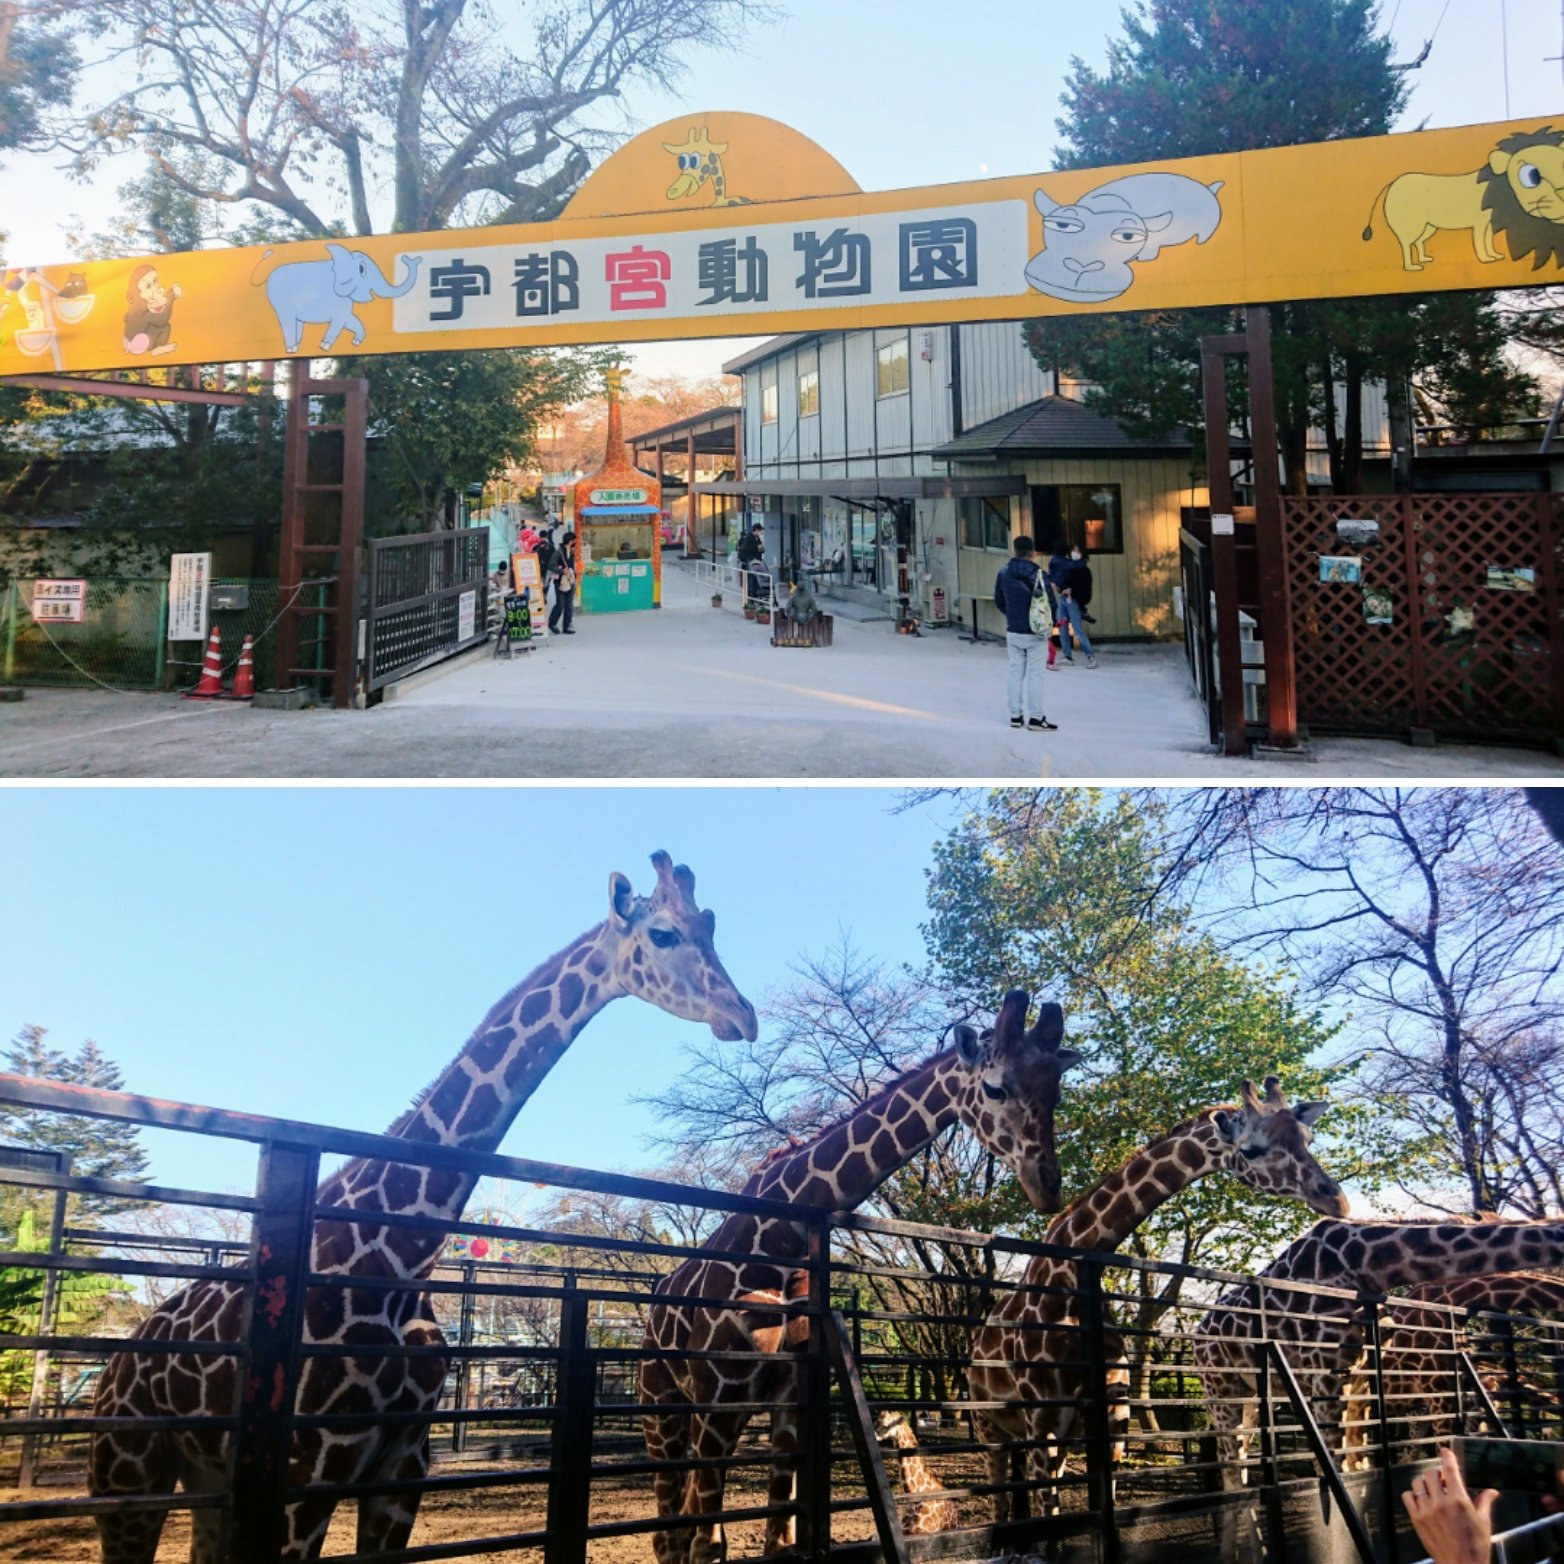 動物園 栃木 大洗水族館が20周年 福島・栃木・群馬の動物園や水族館と連携企画も（みんなの経済新聞ネットワーク）